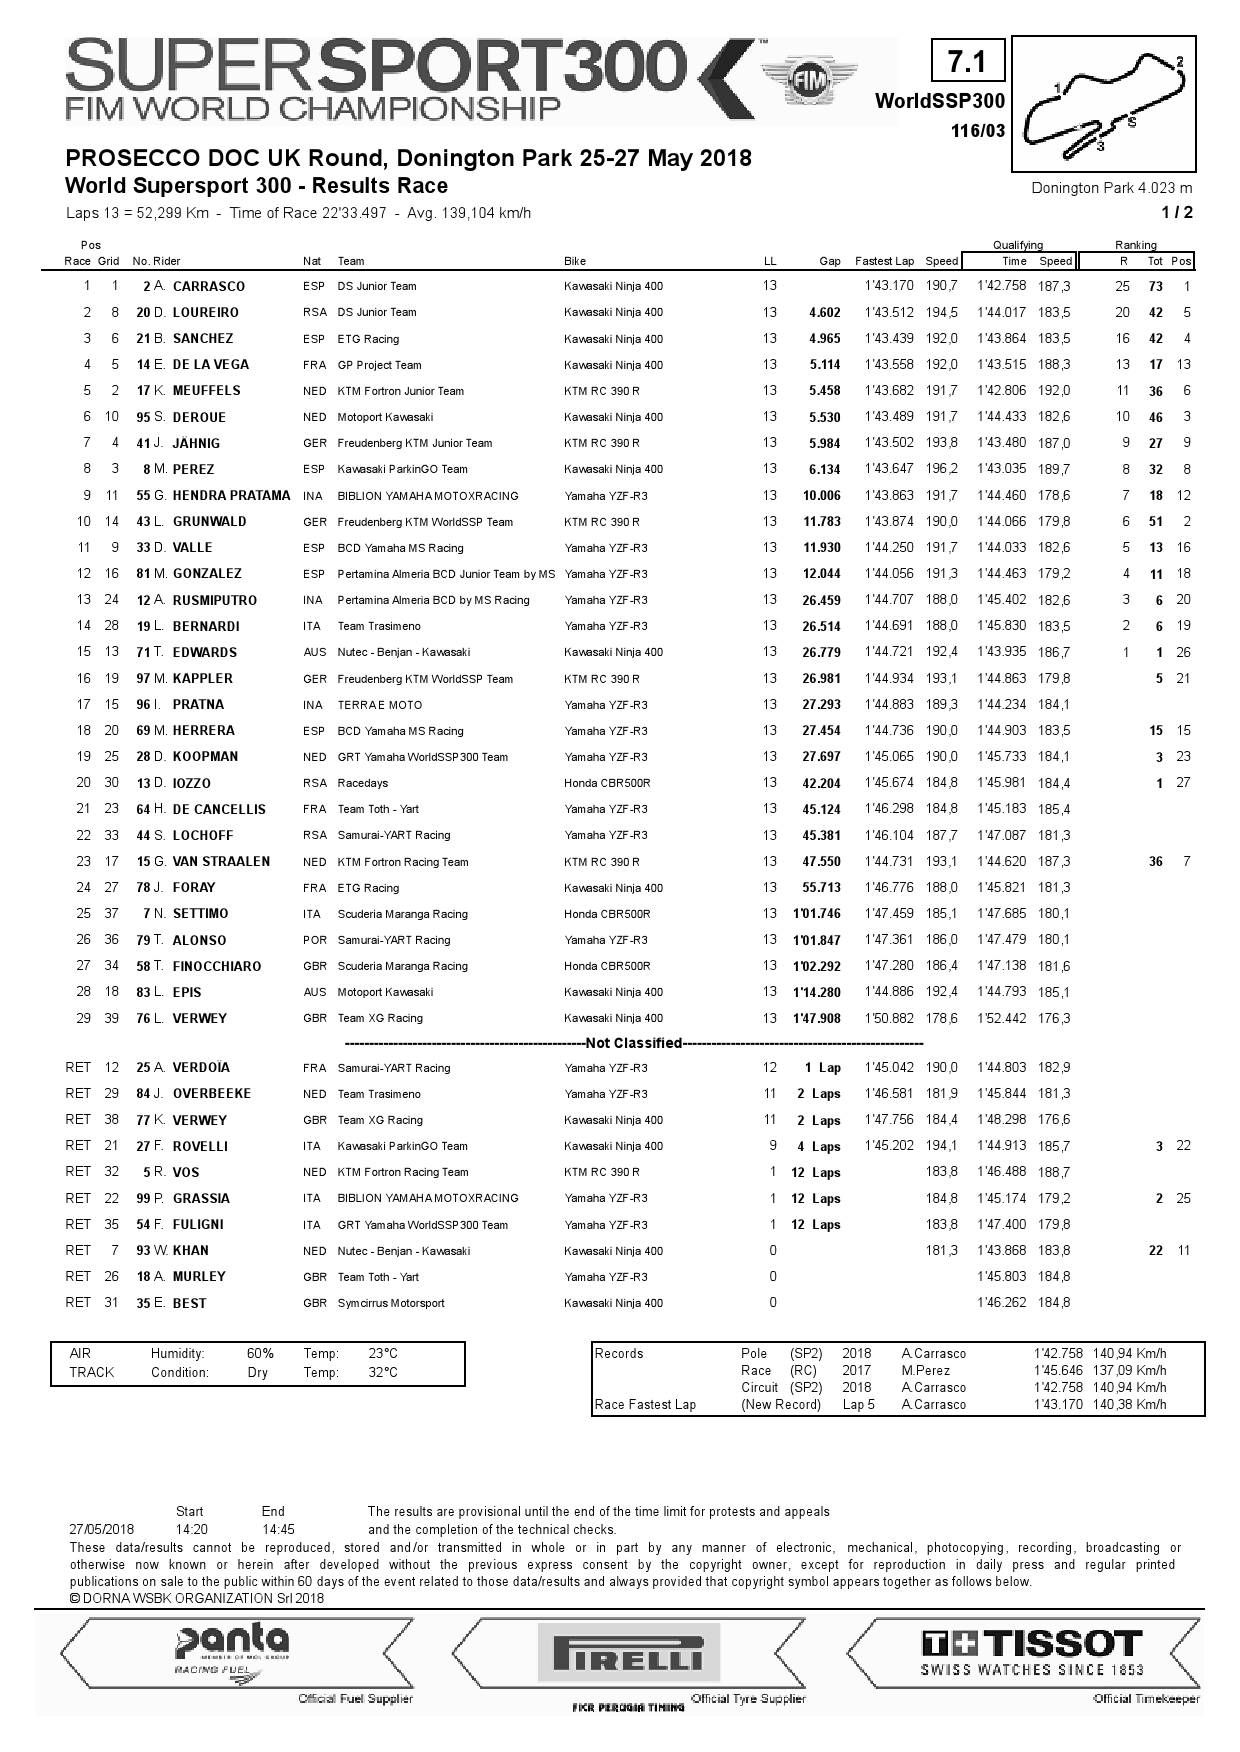 Результаты гонки WorldSSP300, Donington Park, 27/05/2018